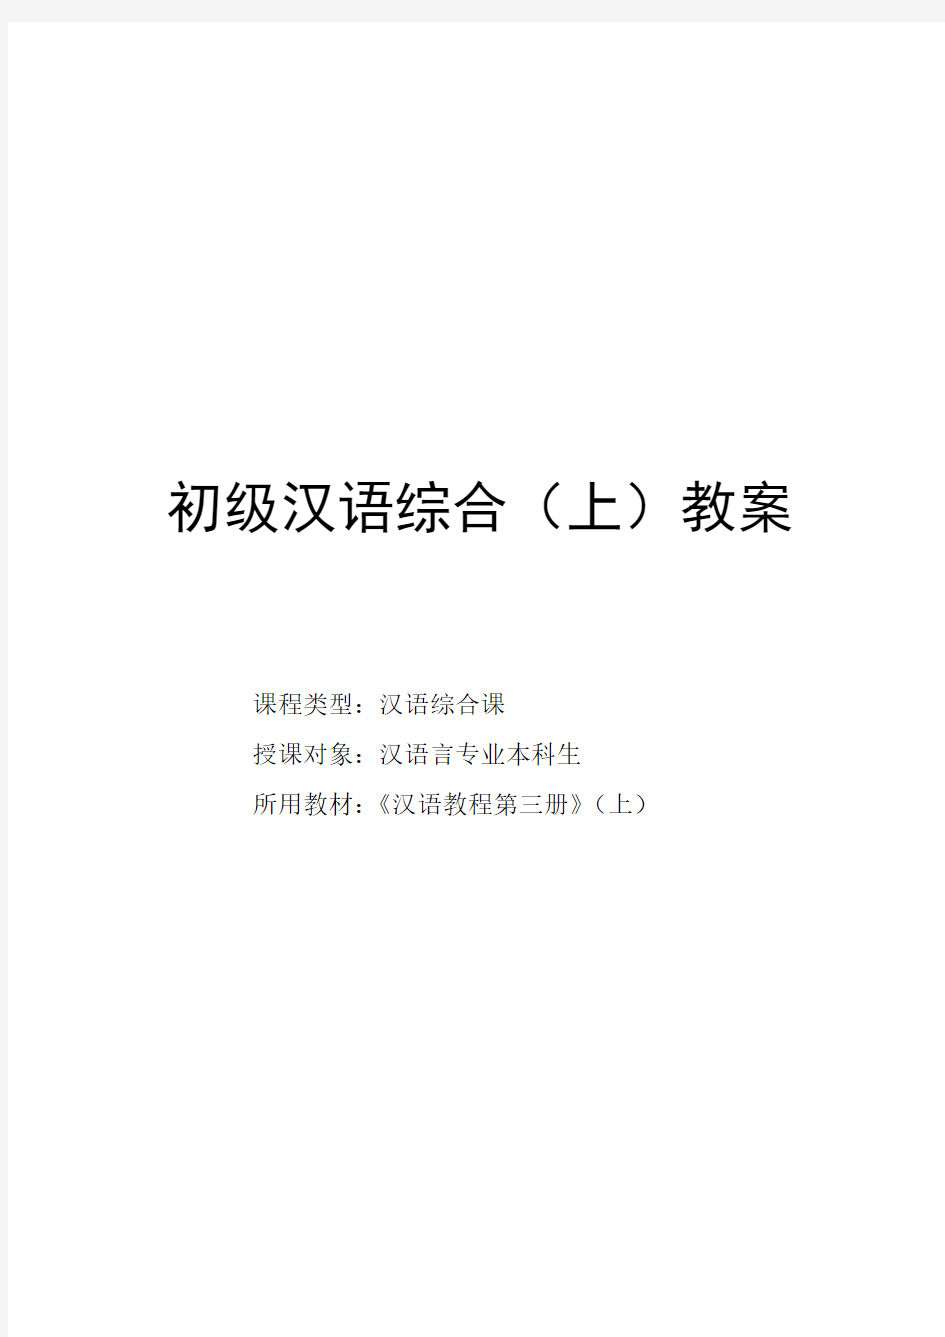 初级汉语综合(上)教案(1)